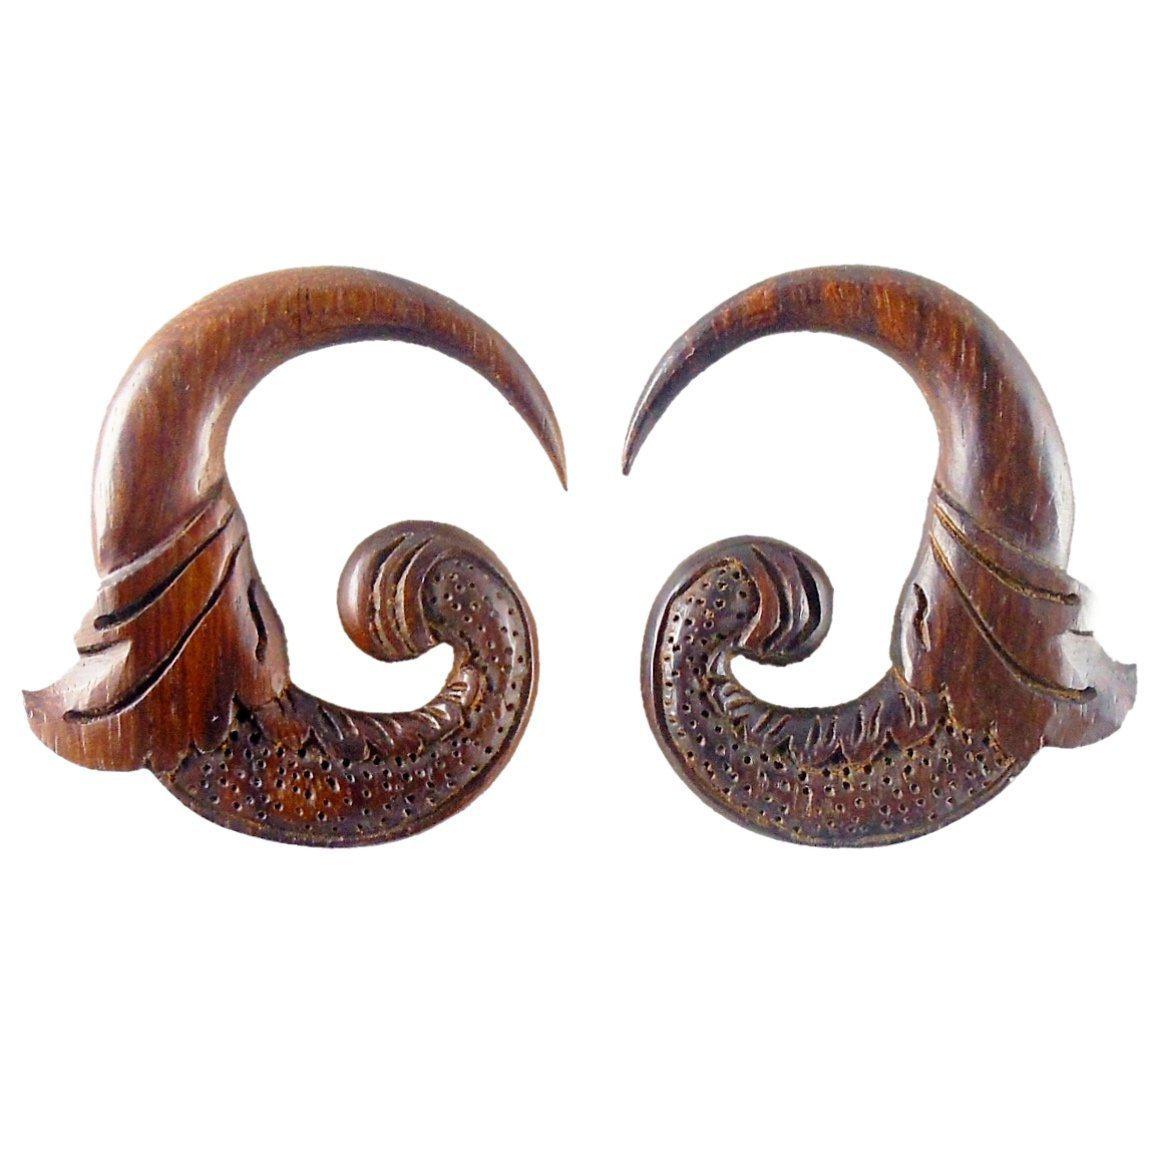 Gauge Earrings :|: Nectar. Tropical Wood 0g gauge earrings.